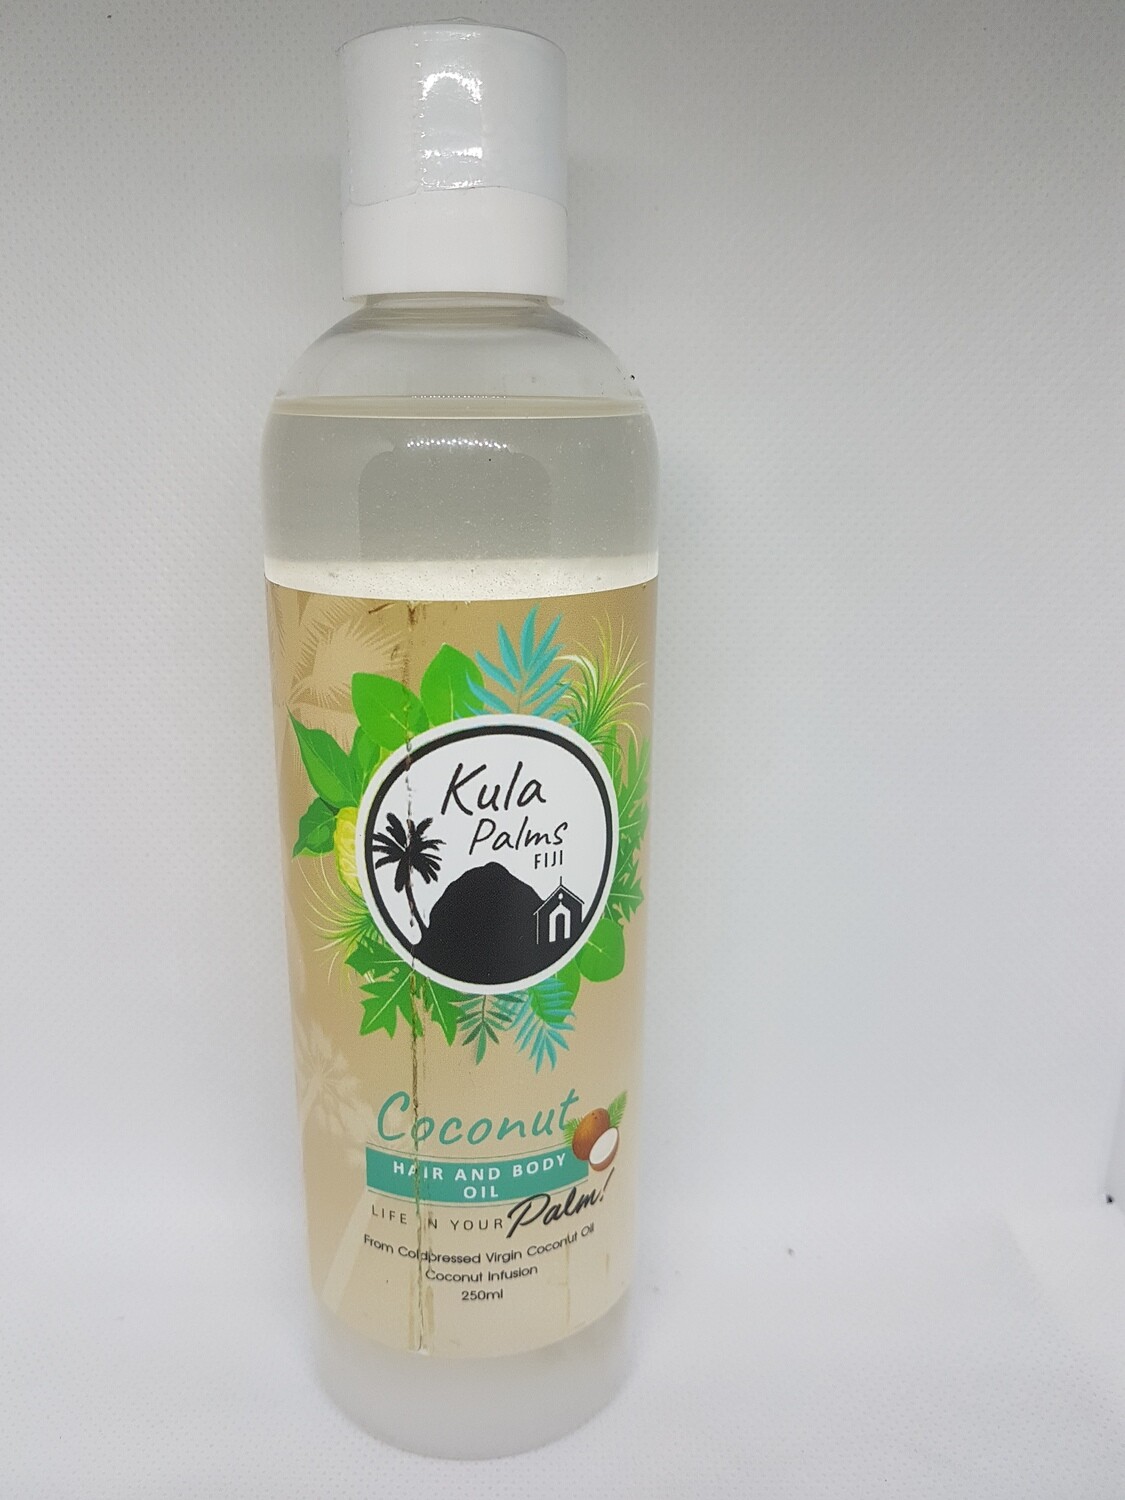 Coconut - Hair & Body Fragrant Oil 250ml - Infused Coconut Oil - Organic Skincare